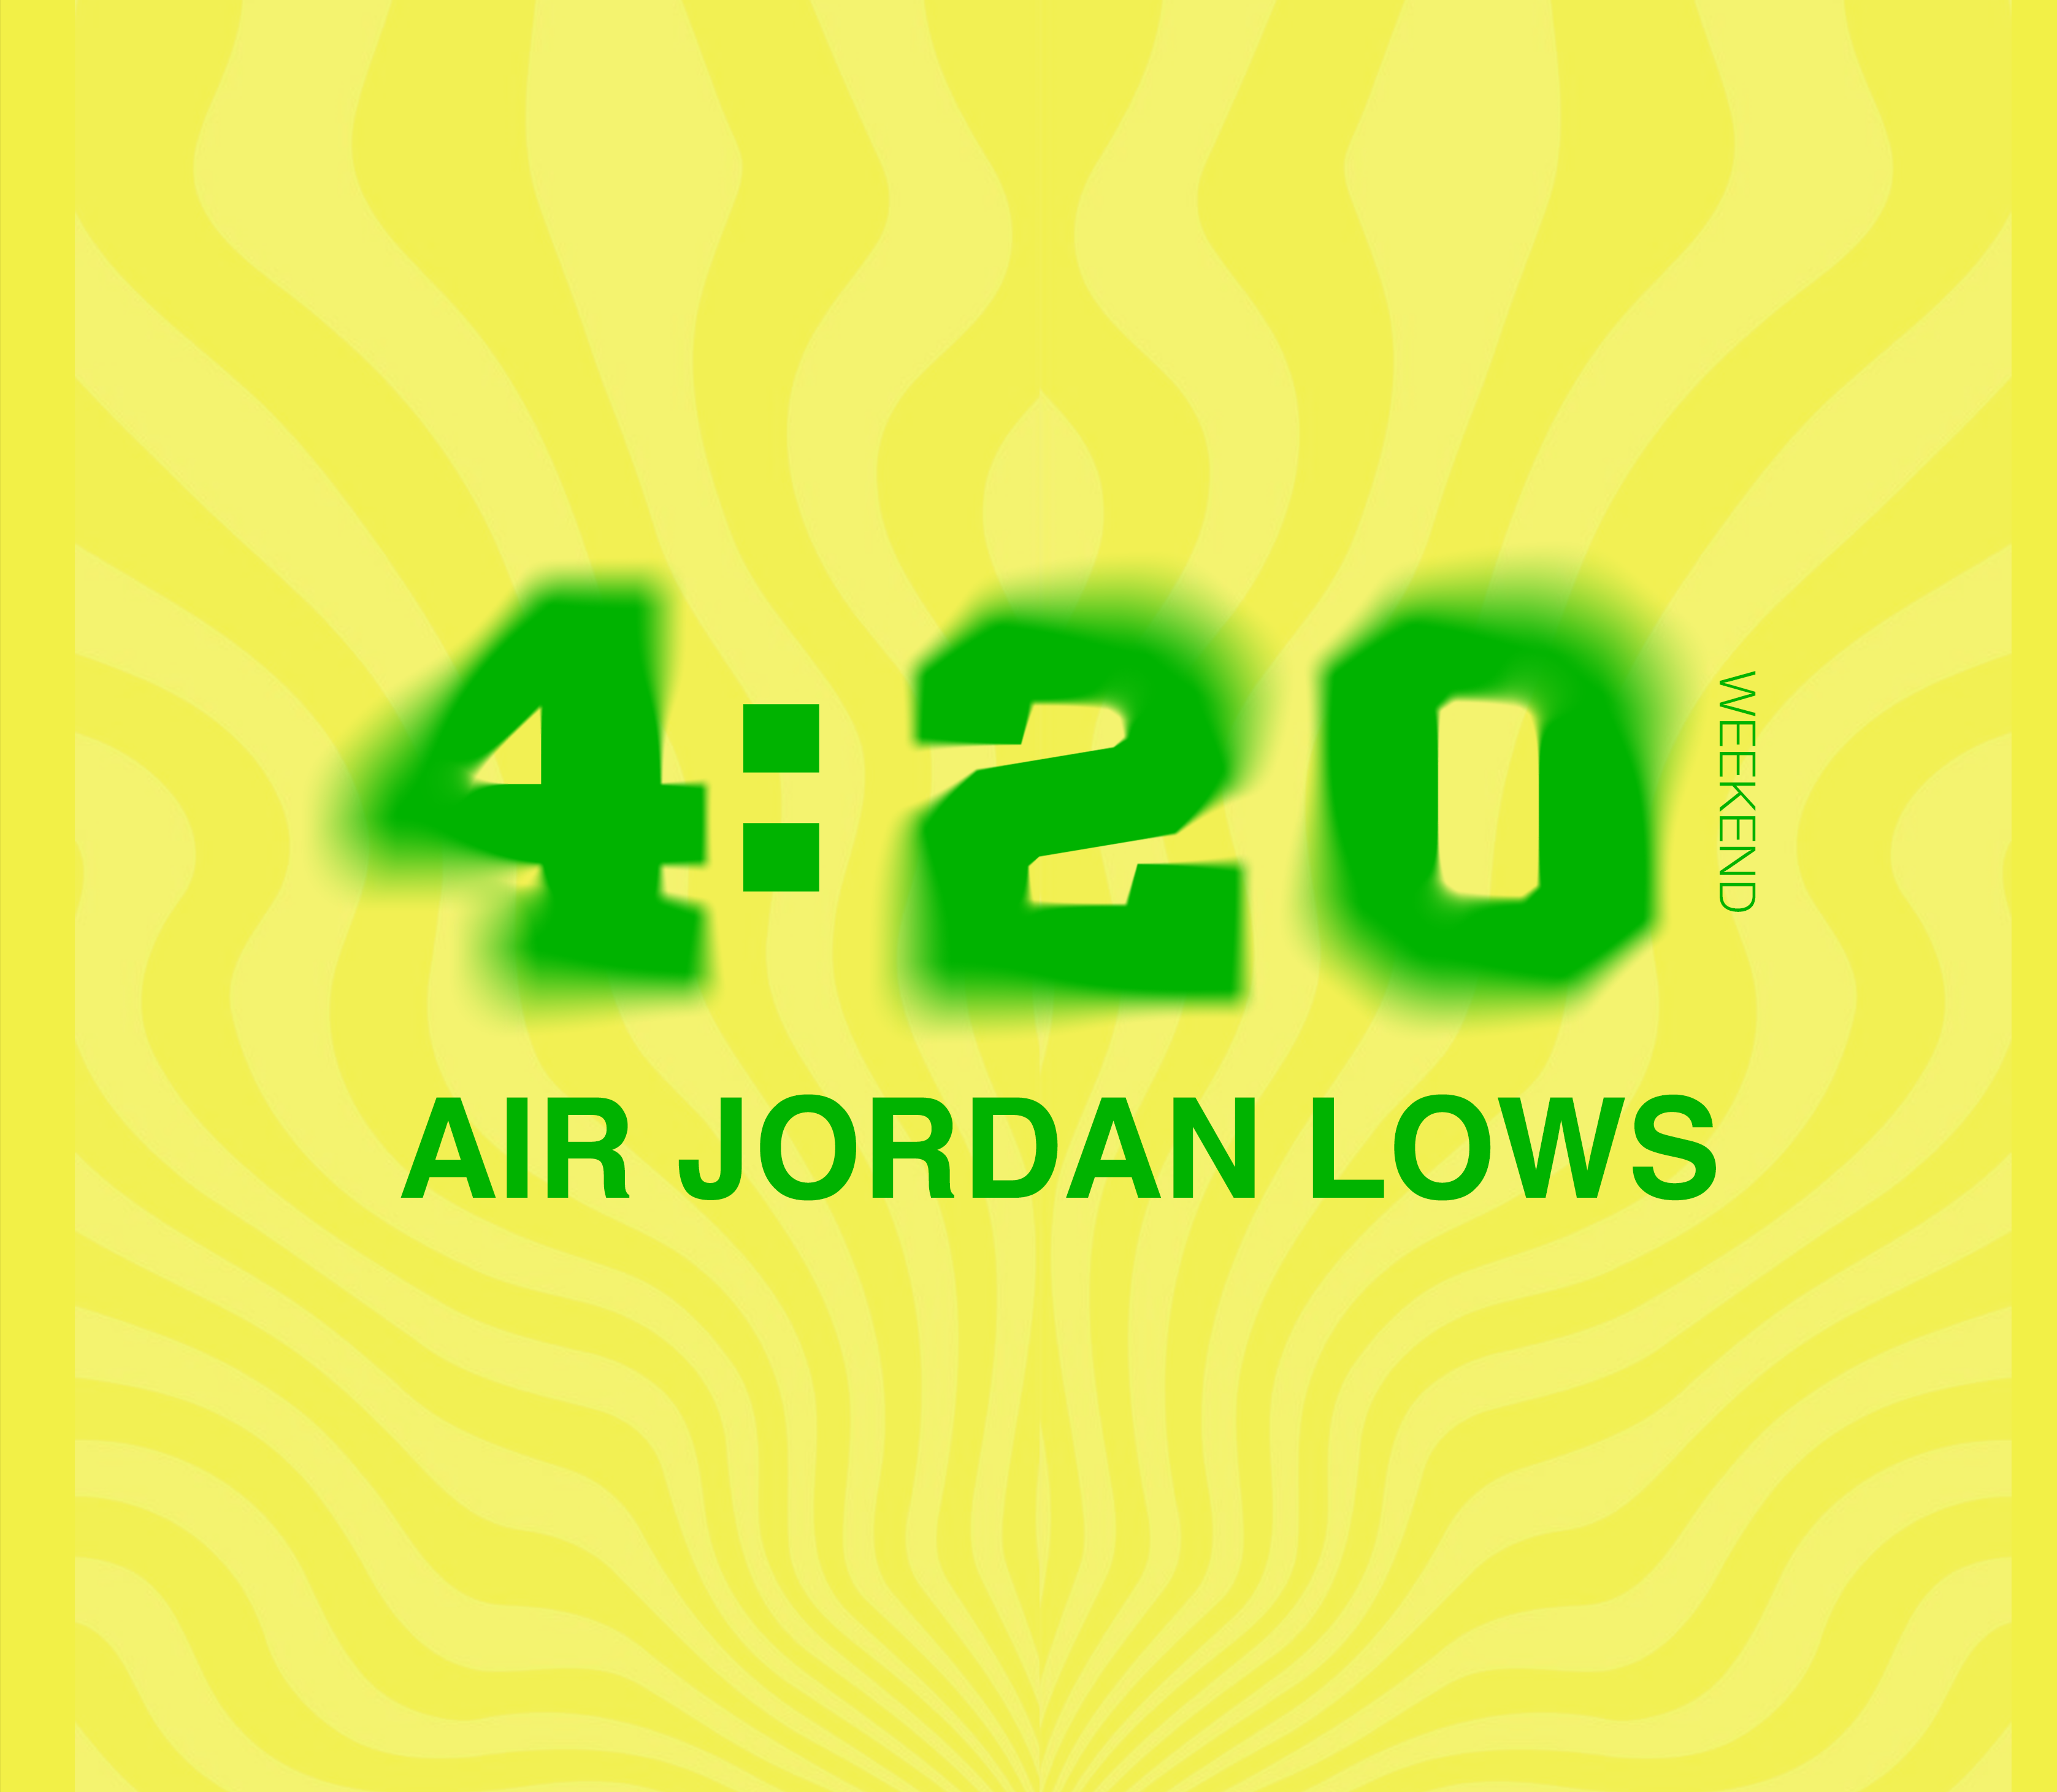 420 AIR JORDAN LOWS